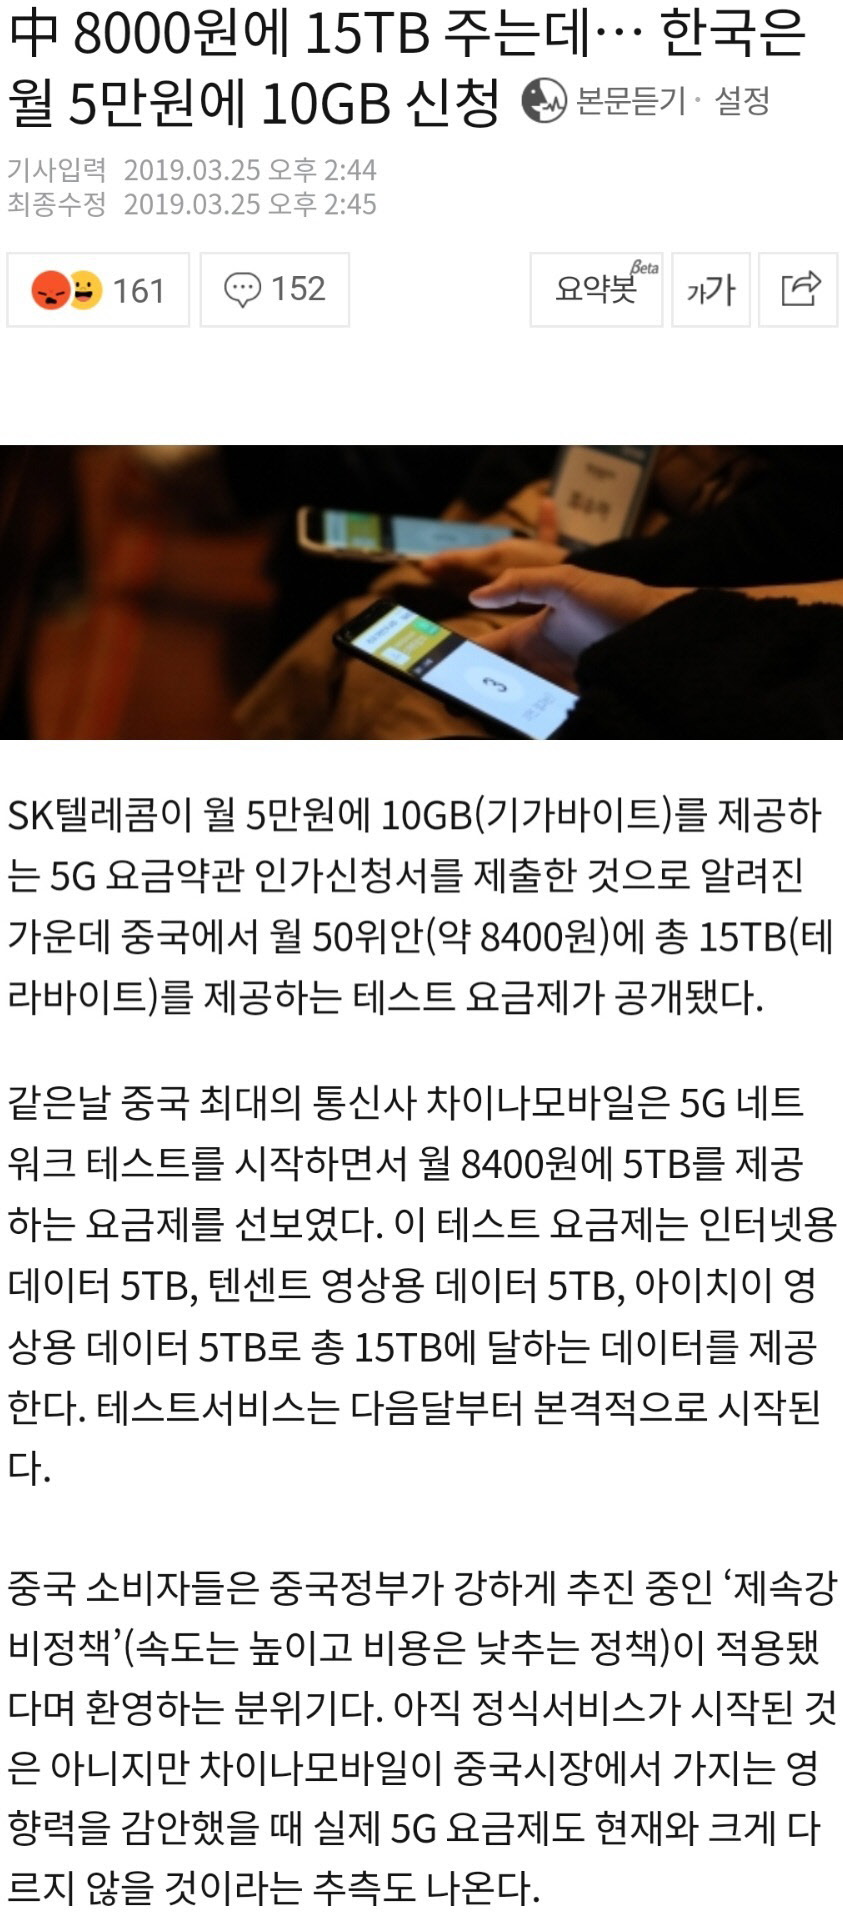 한국과 중국의 5G 요금제